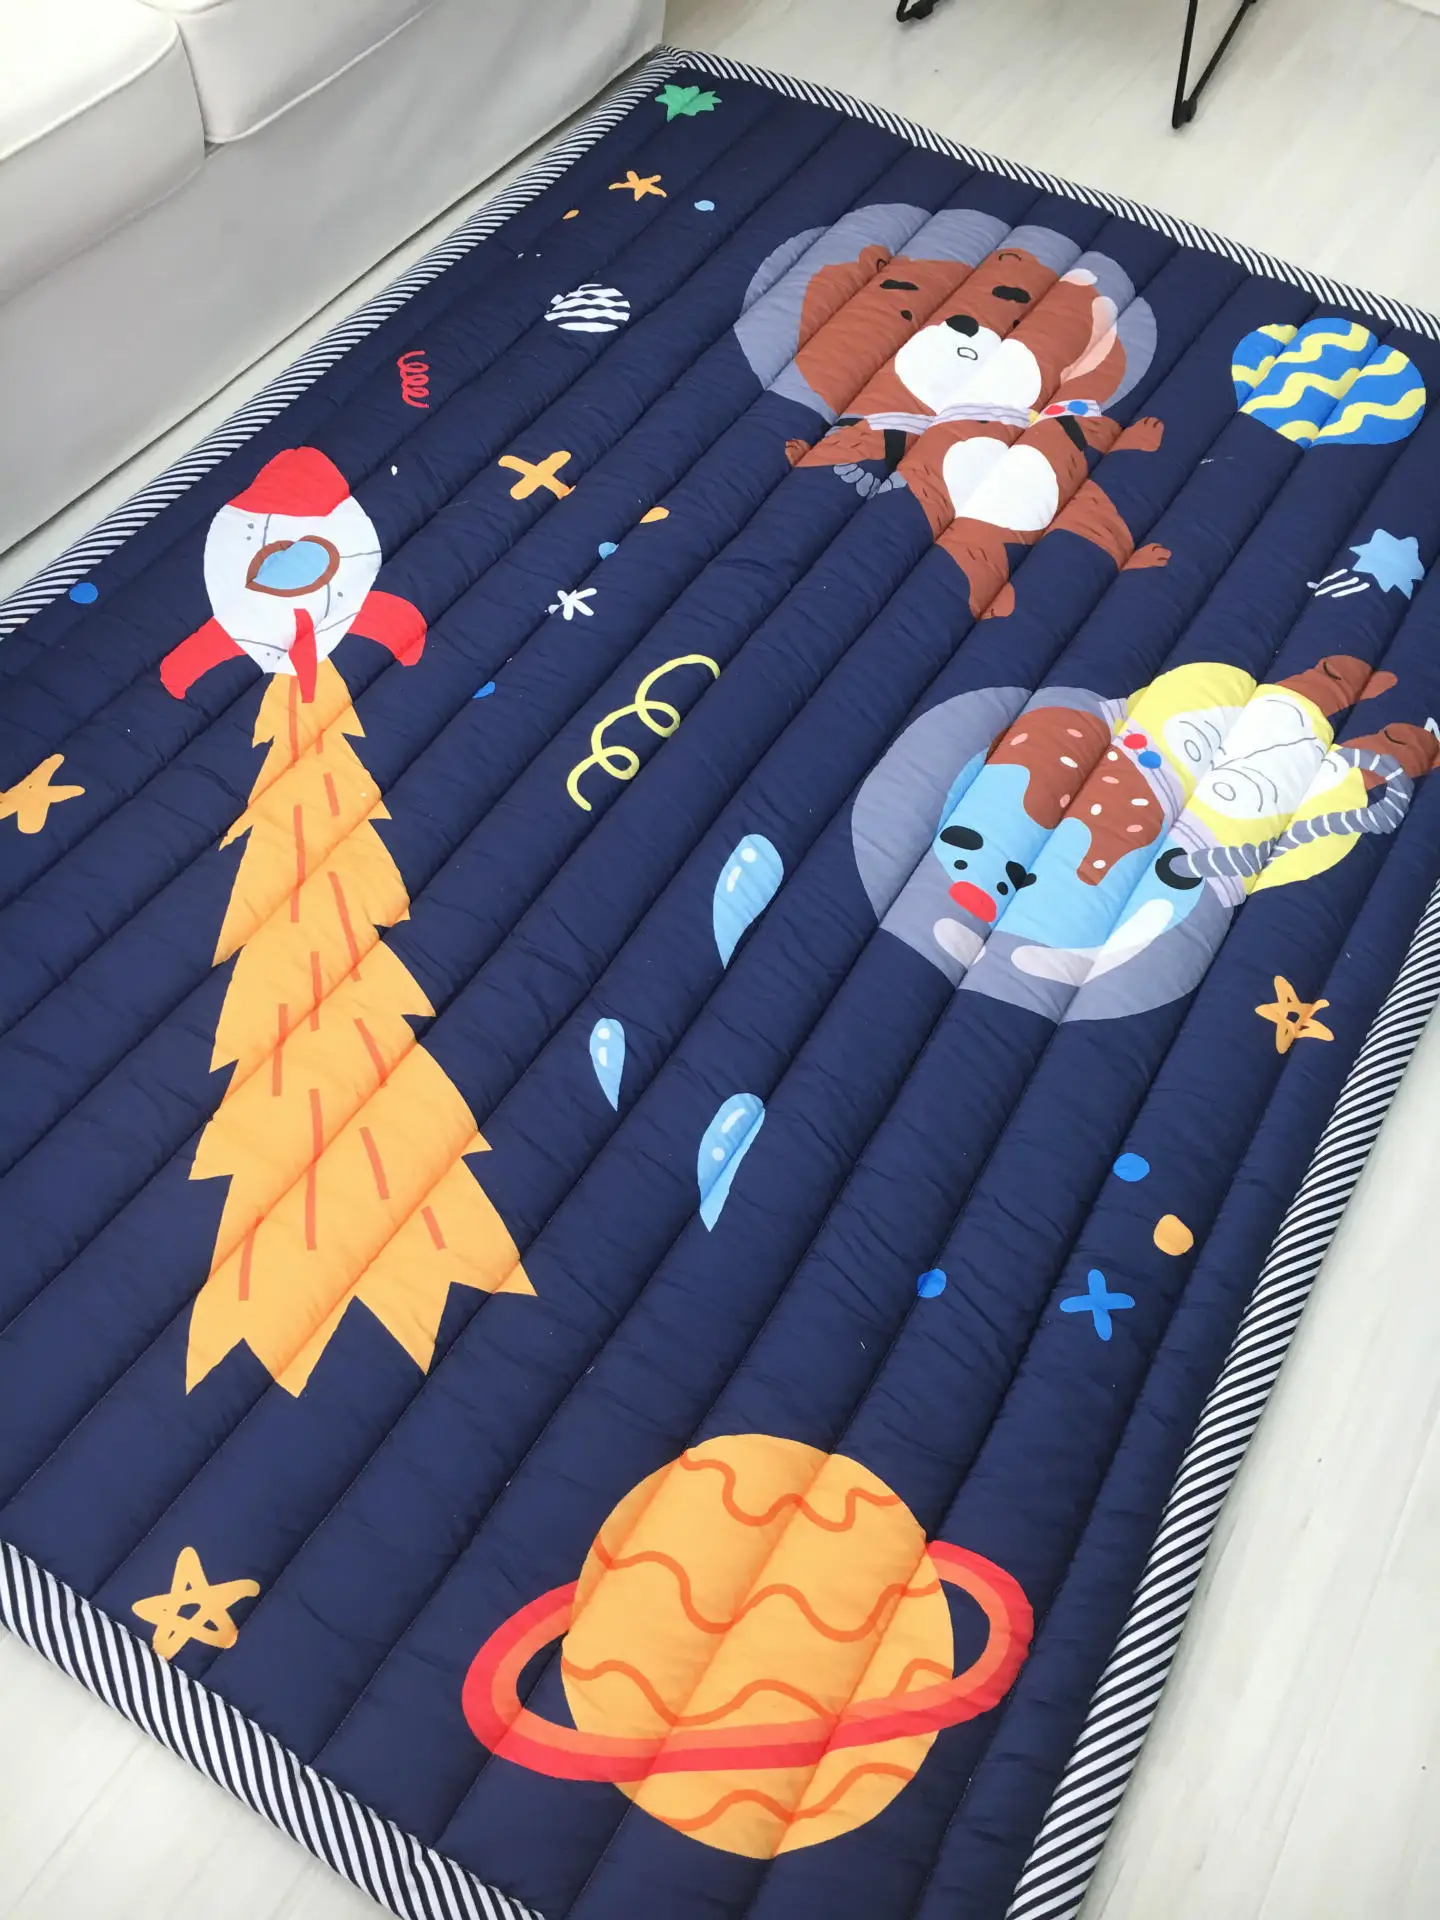 Ins мультяшный коврик мягкий складной детский коврик для лазания детское сиденье игровой игрушечный планшет одеяло - Цвет: Шоколад